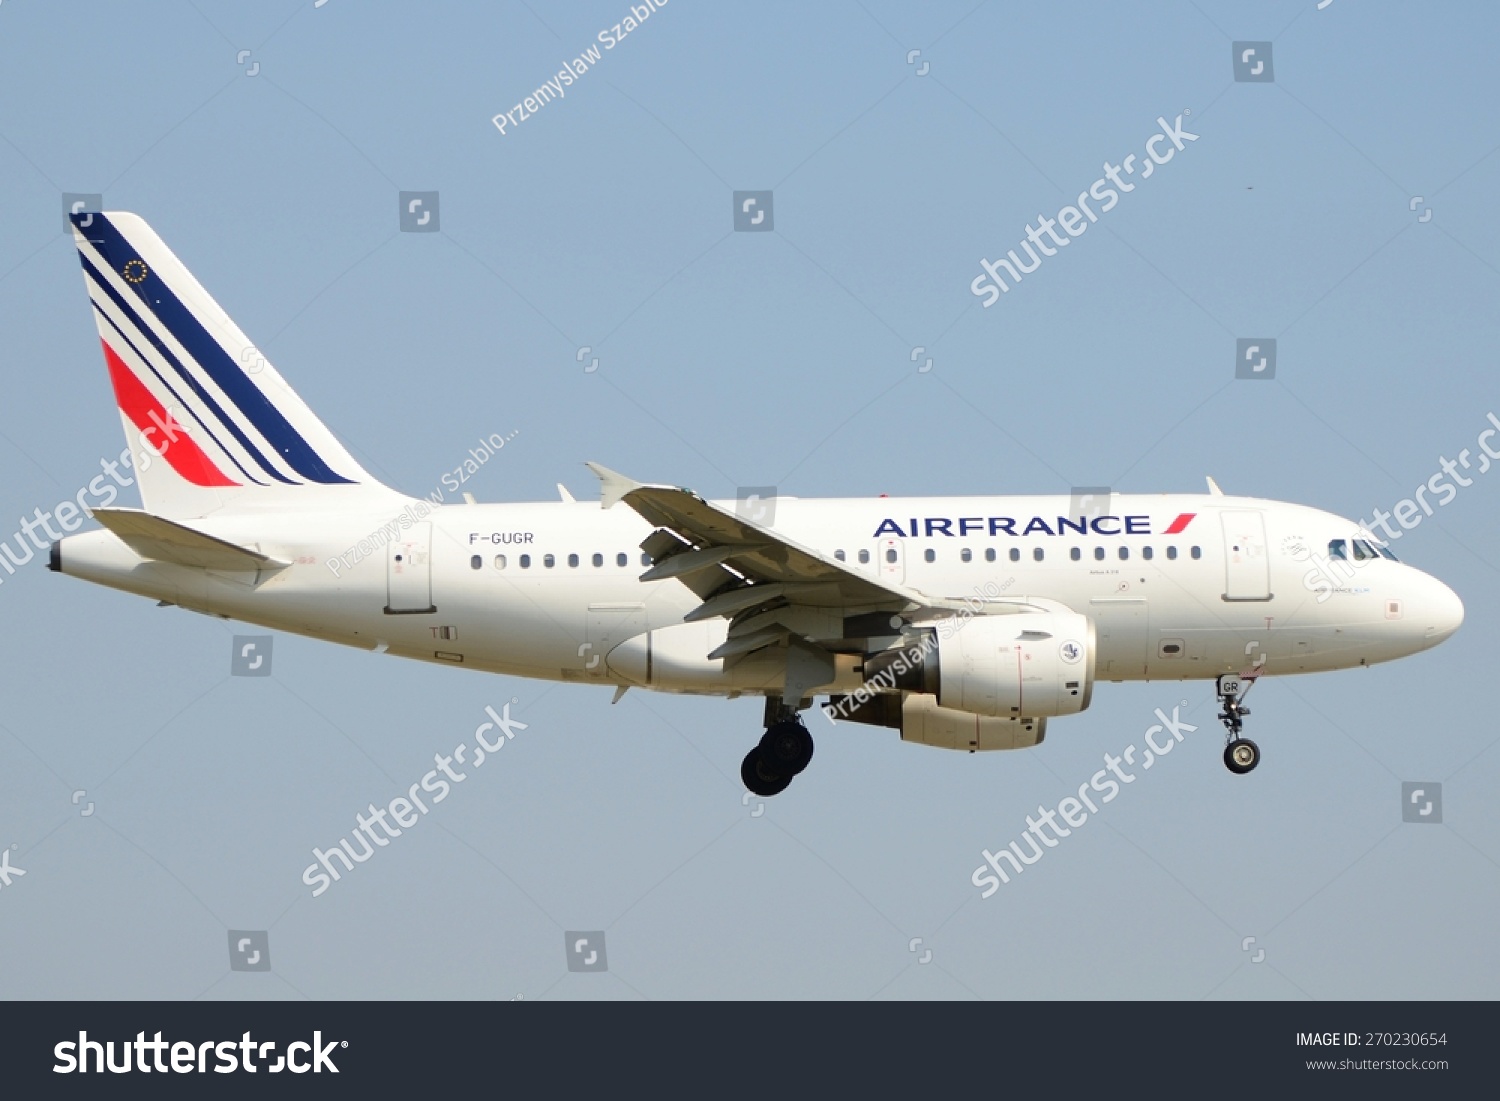 这是法航空客A318客机的一个视图注册为F-G